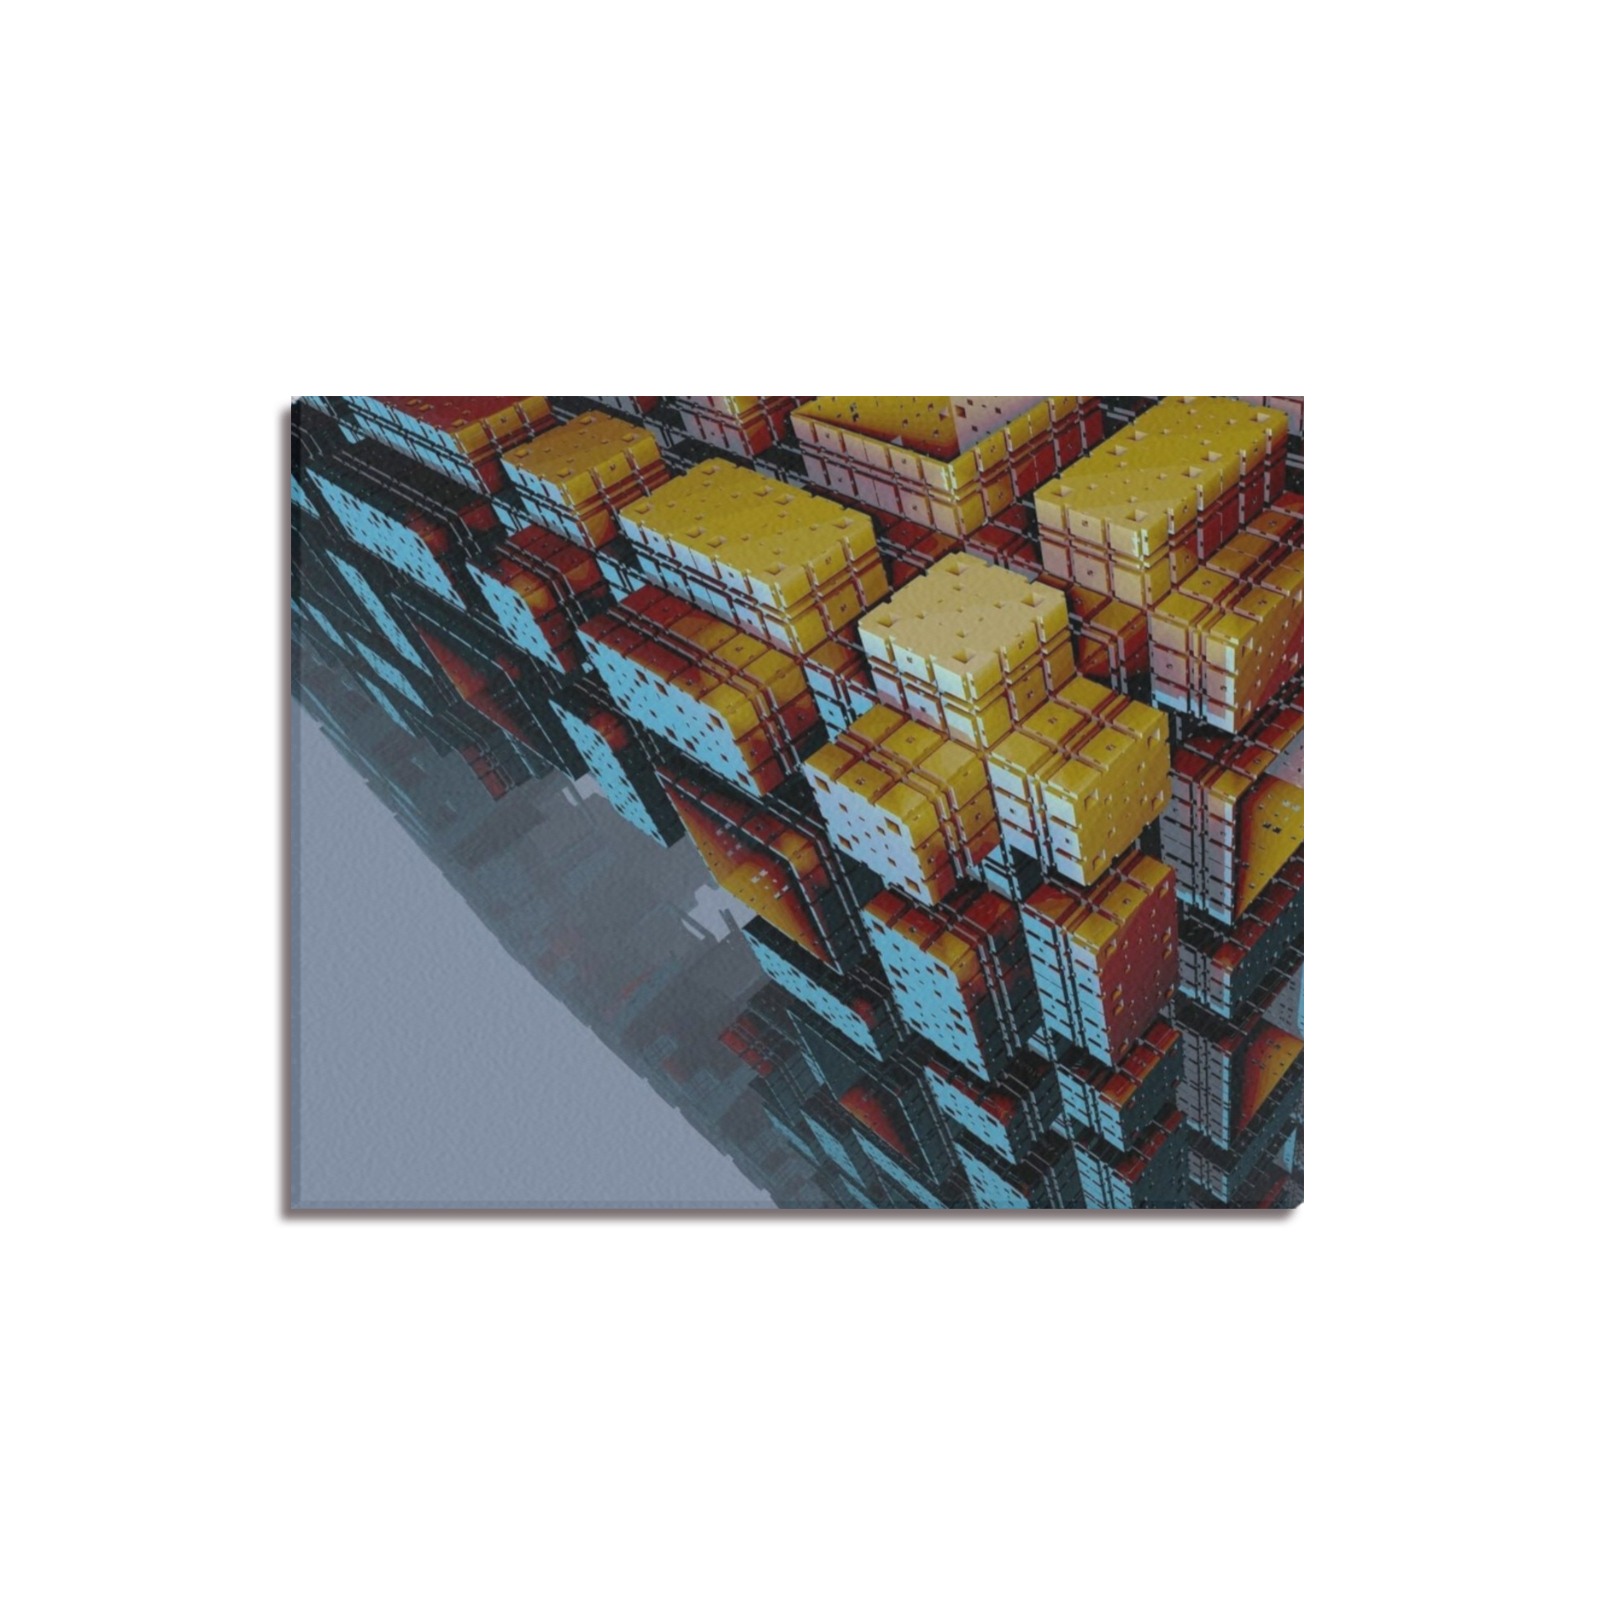 Honeycomb Frame Canvas Print 20"x16"